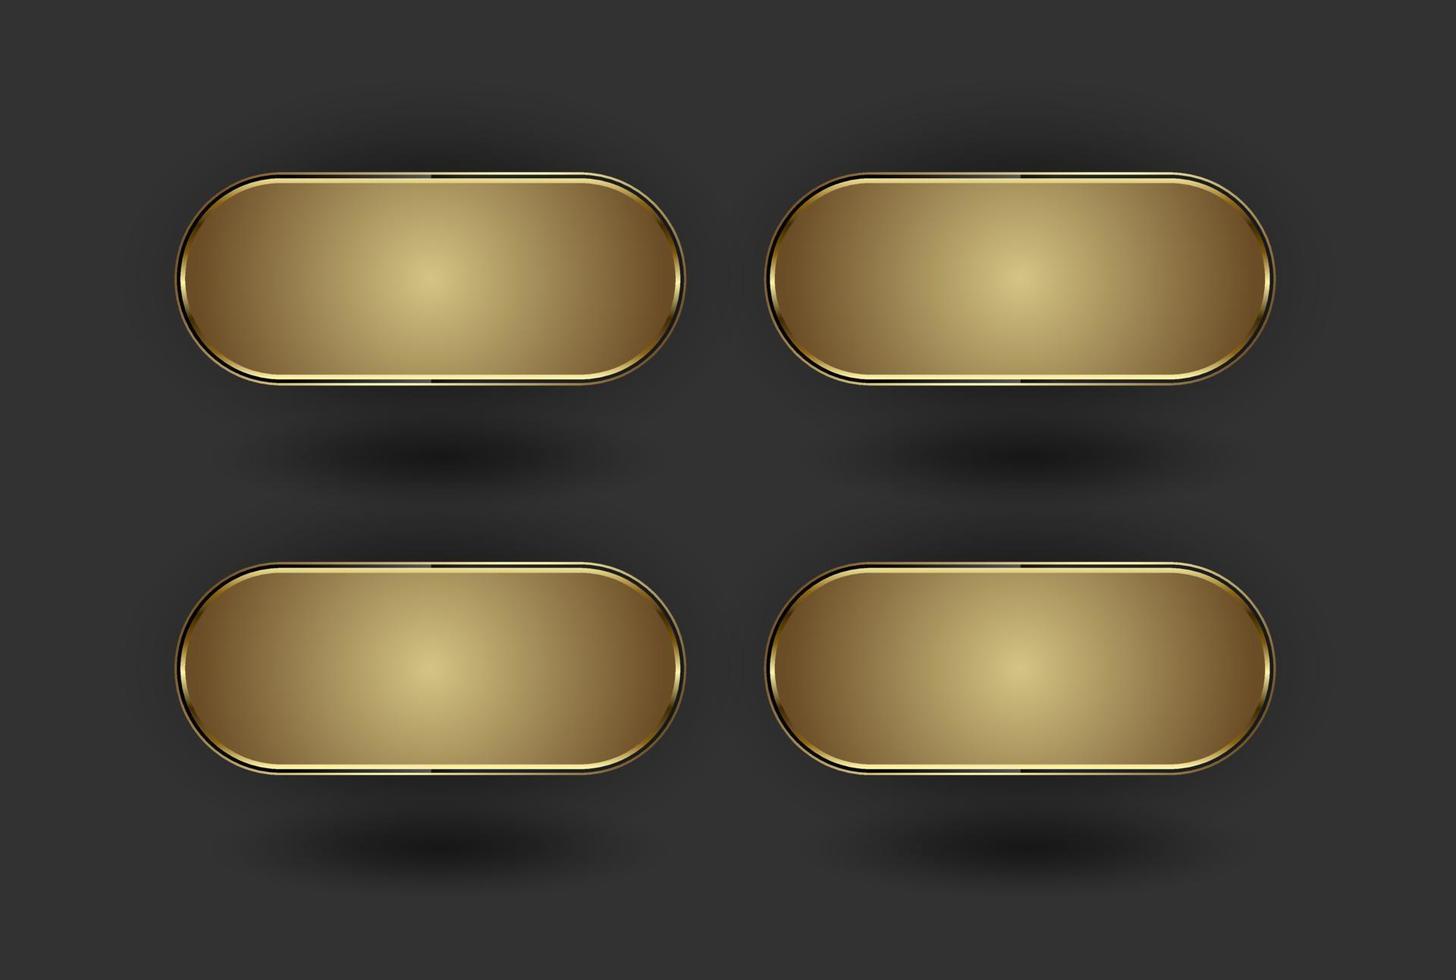 conjunto de 4 botões dourados, quatro formas premium de estilo geométrico com molduras de luxo e forma dourada na ilustração vetorial de efeito de fundo escuro. vetor